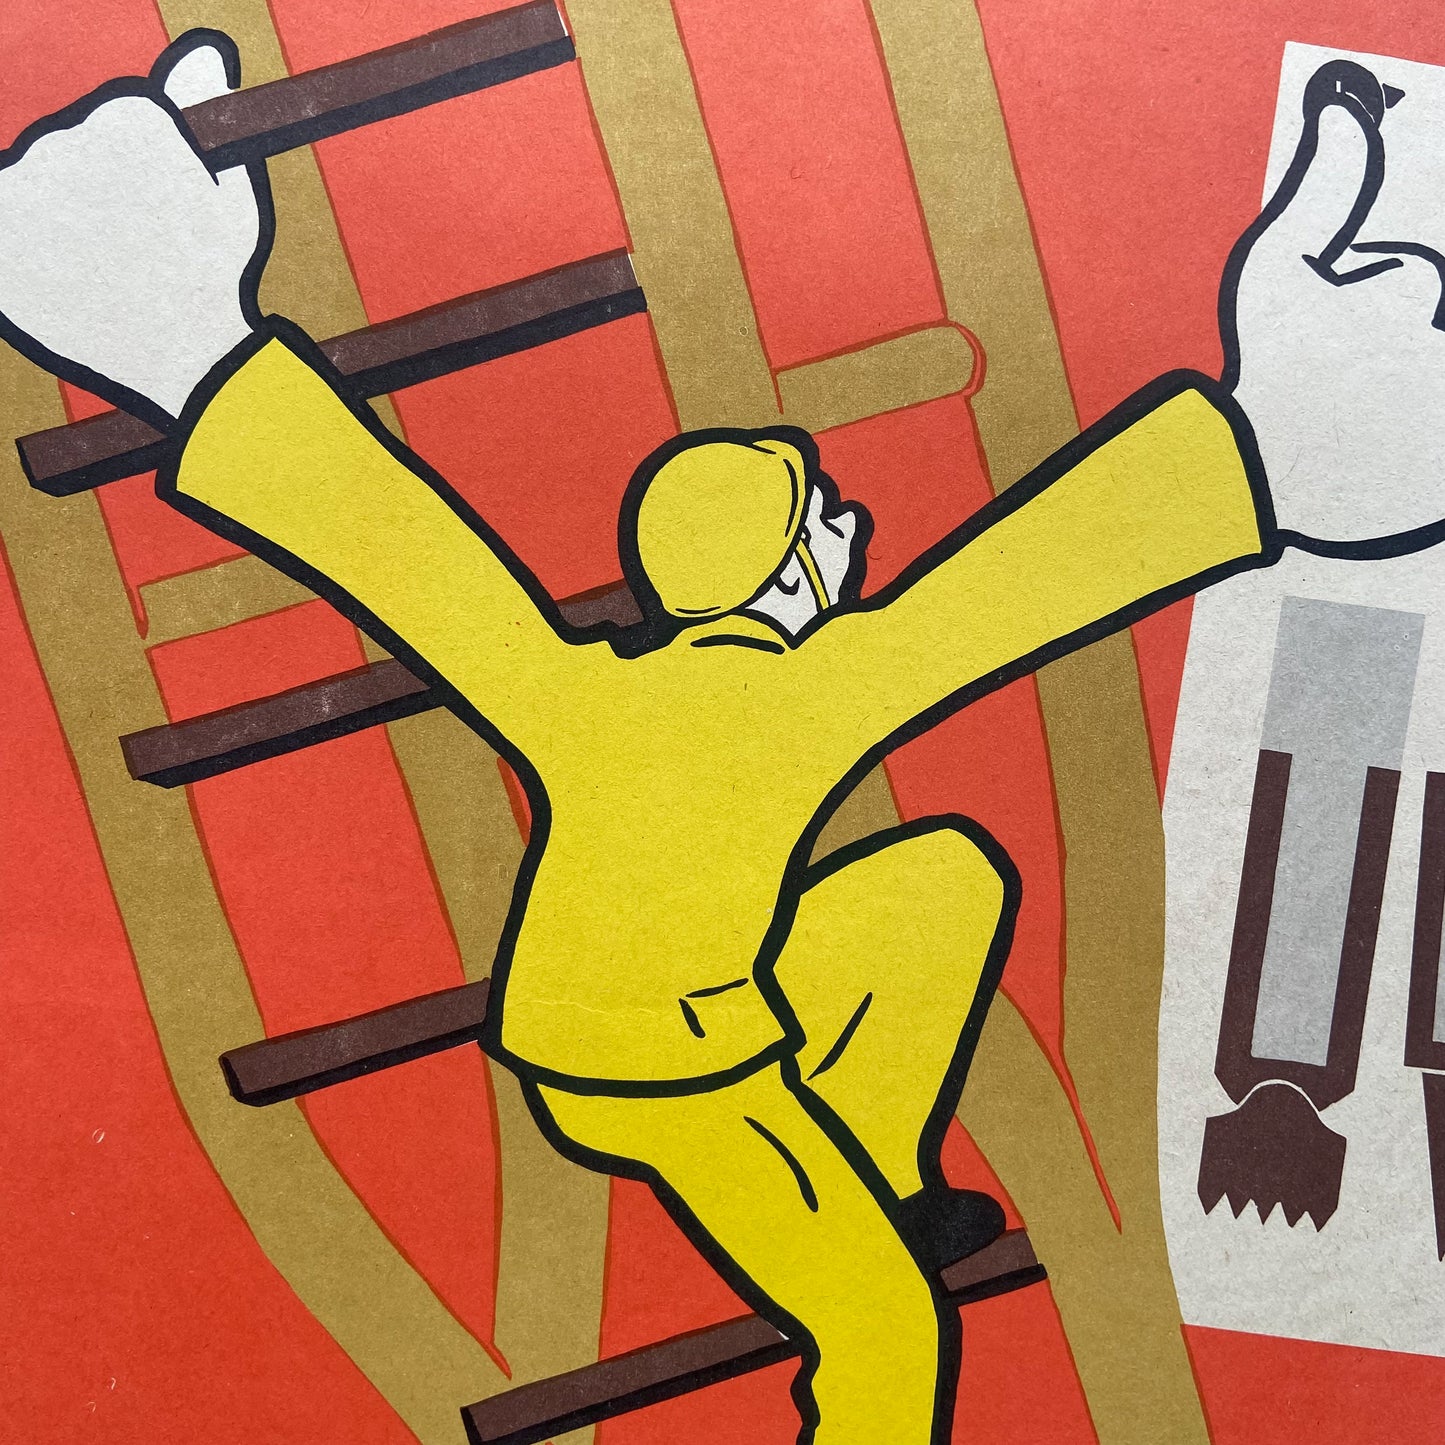 1986 Soviet Work Safety Poster #P1172 - 17" x 23"